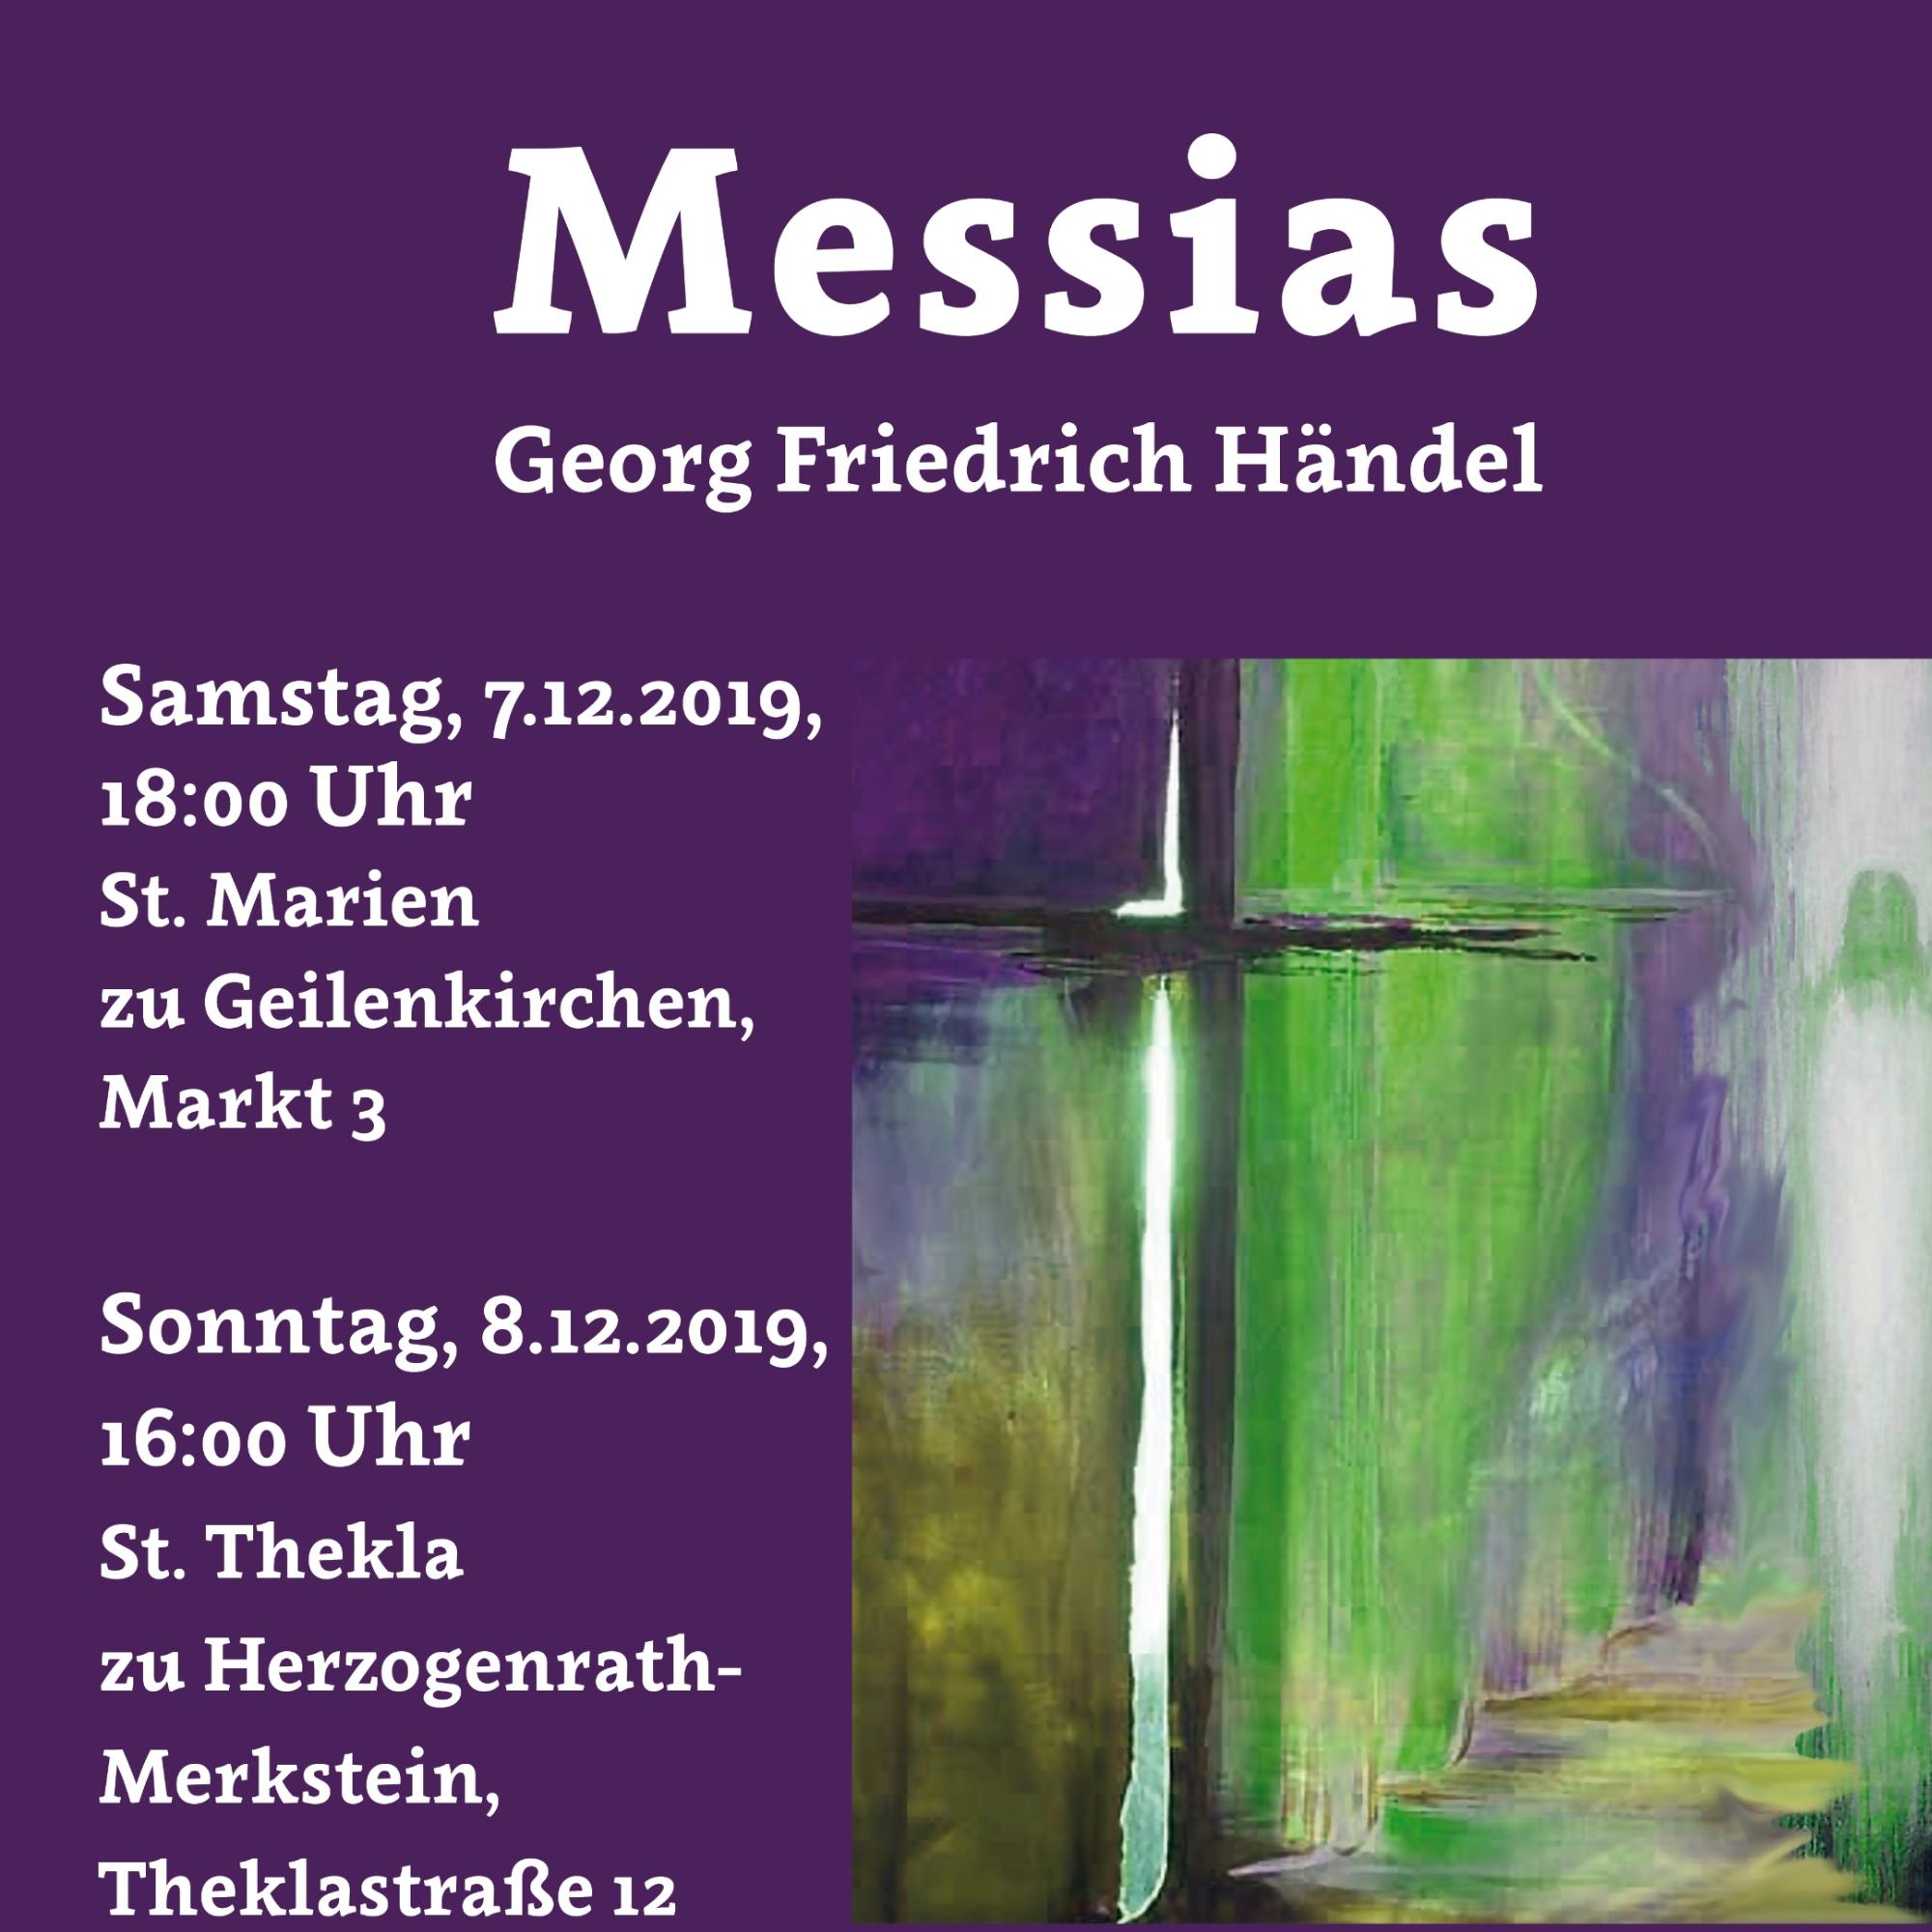 G. F. Händel - Messias: Plakat zu den Aufführungen